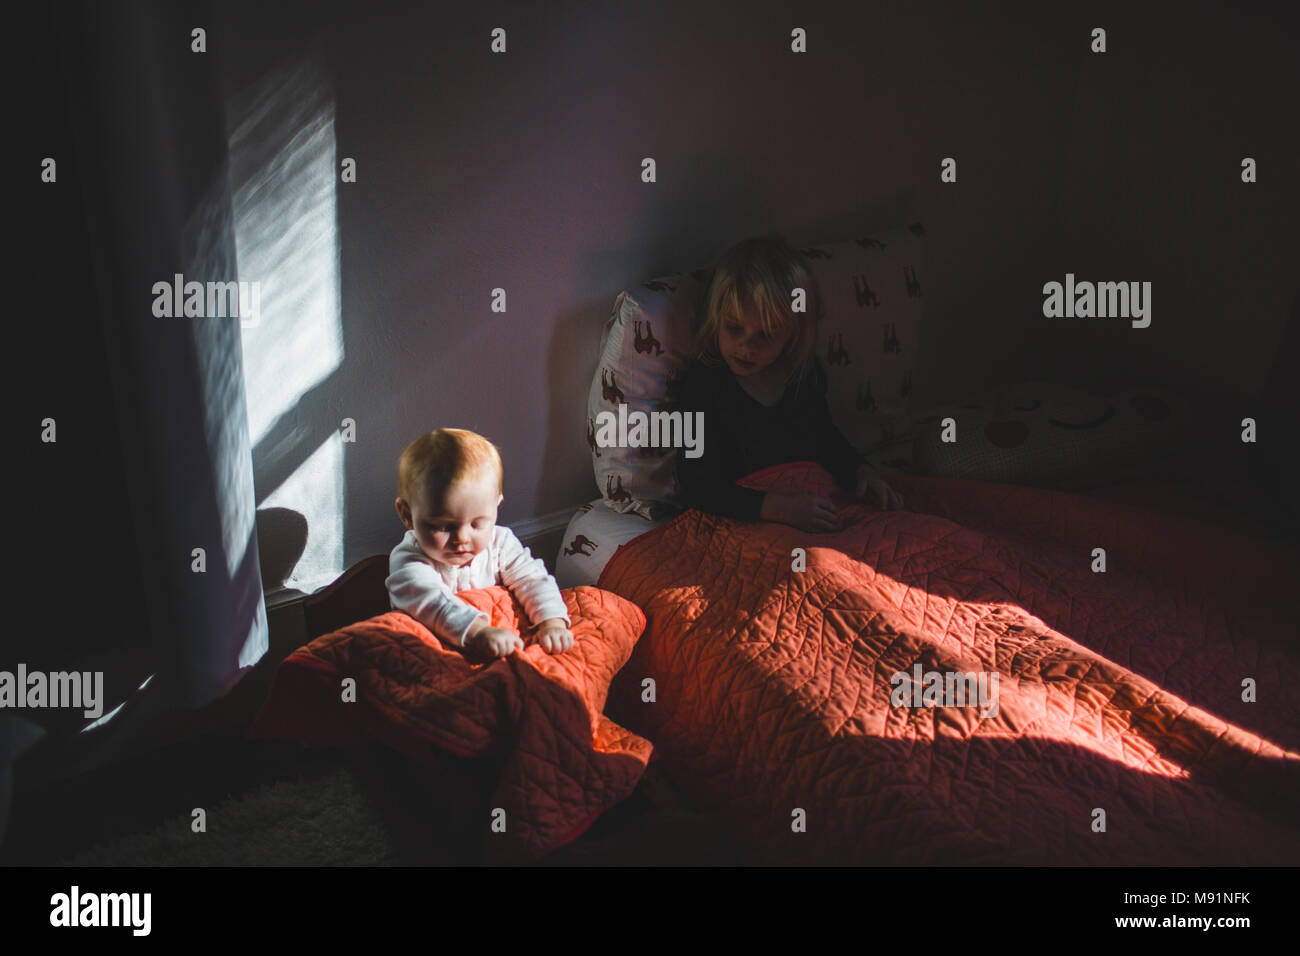 Bambino nella culla babydoll luce drammatica trendy camera per bambini Foto Stock